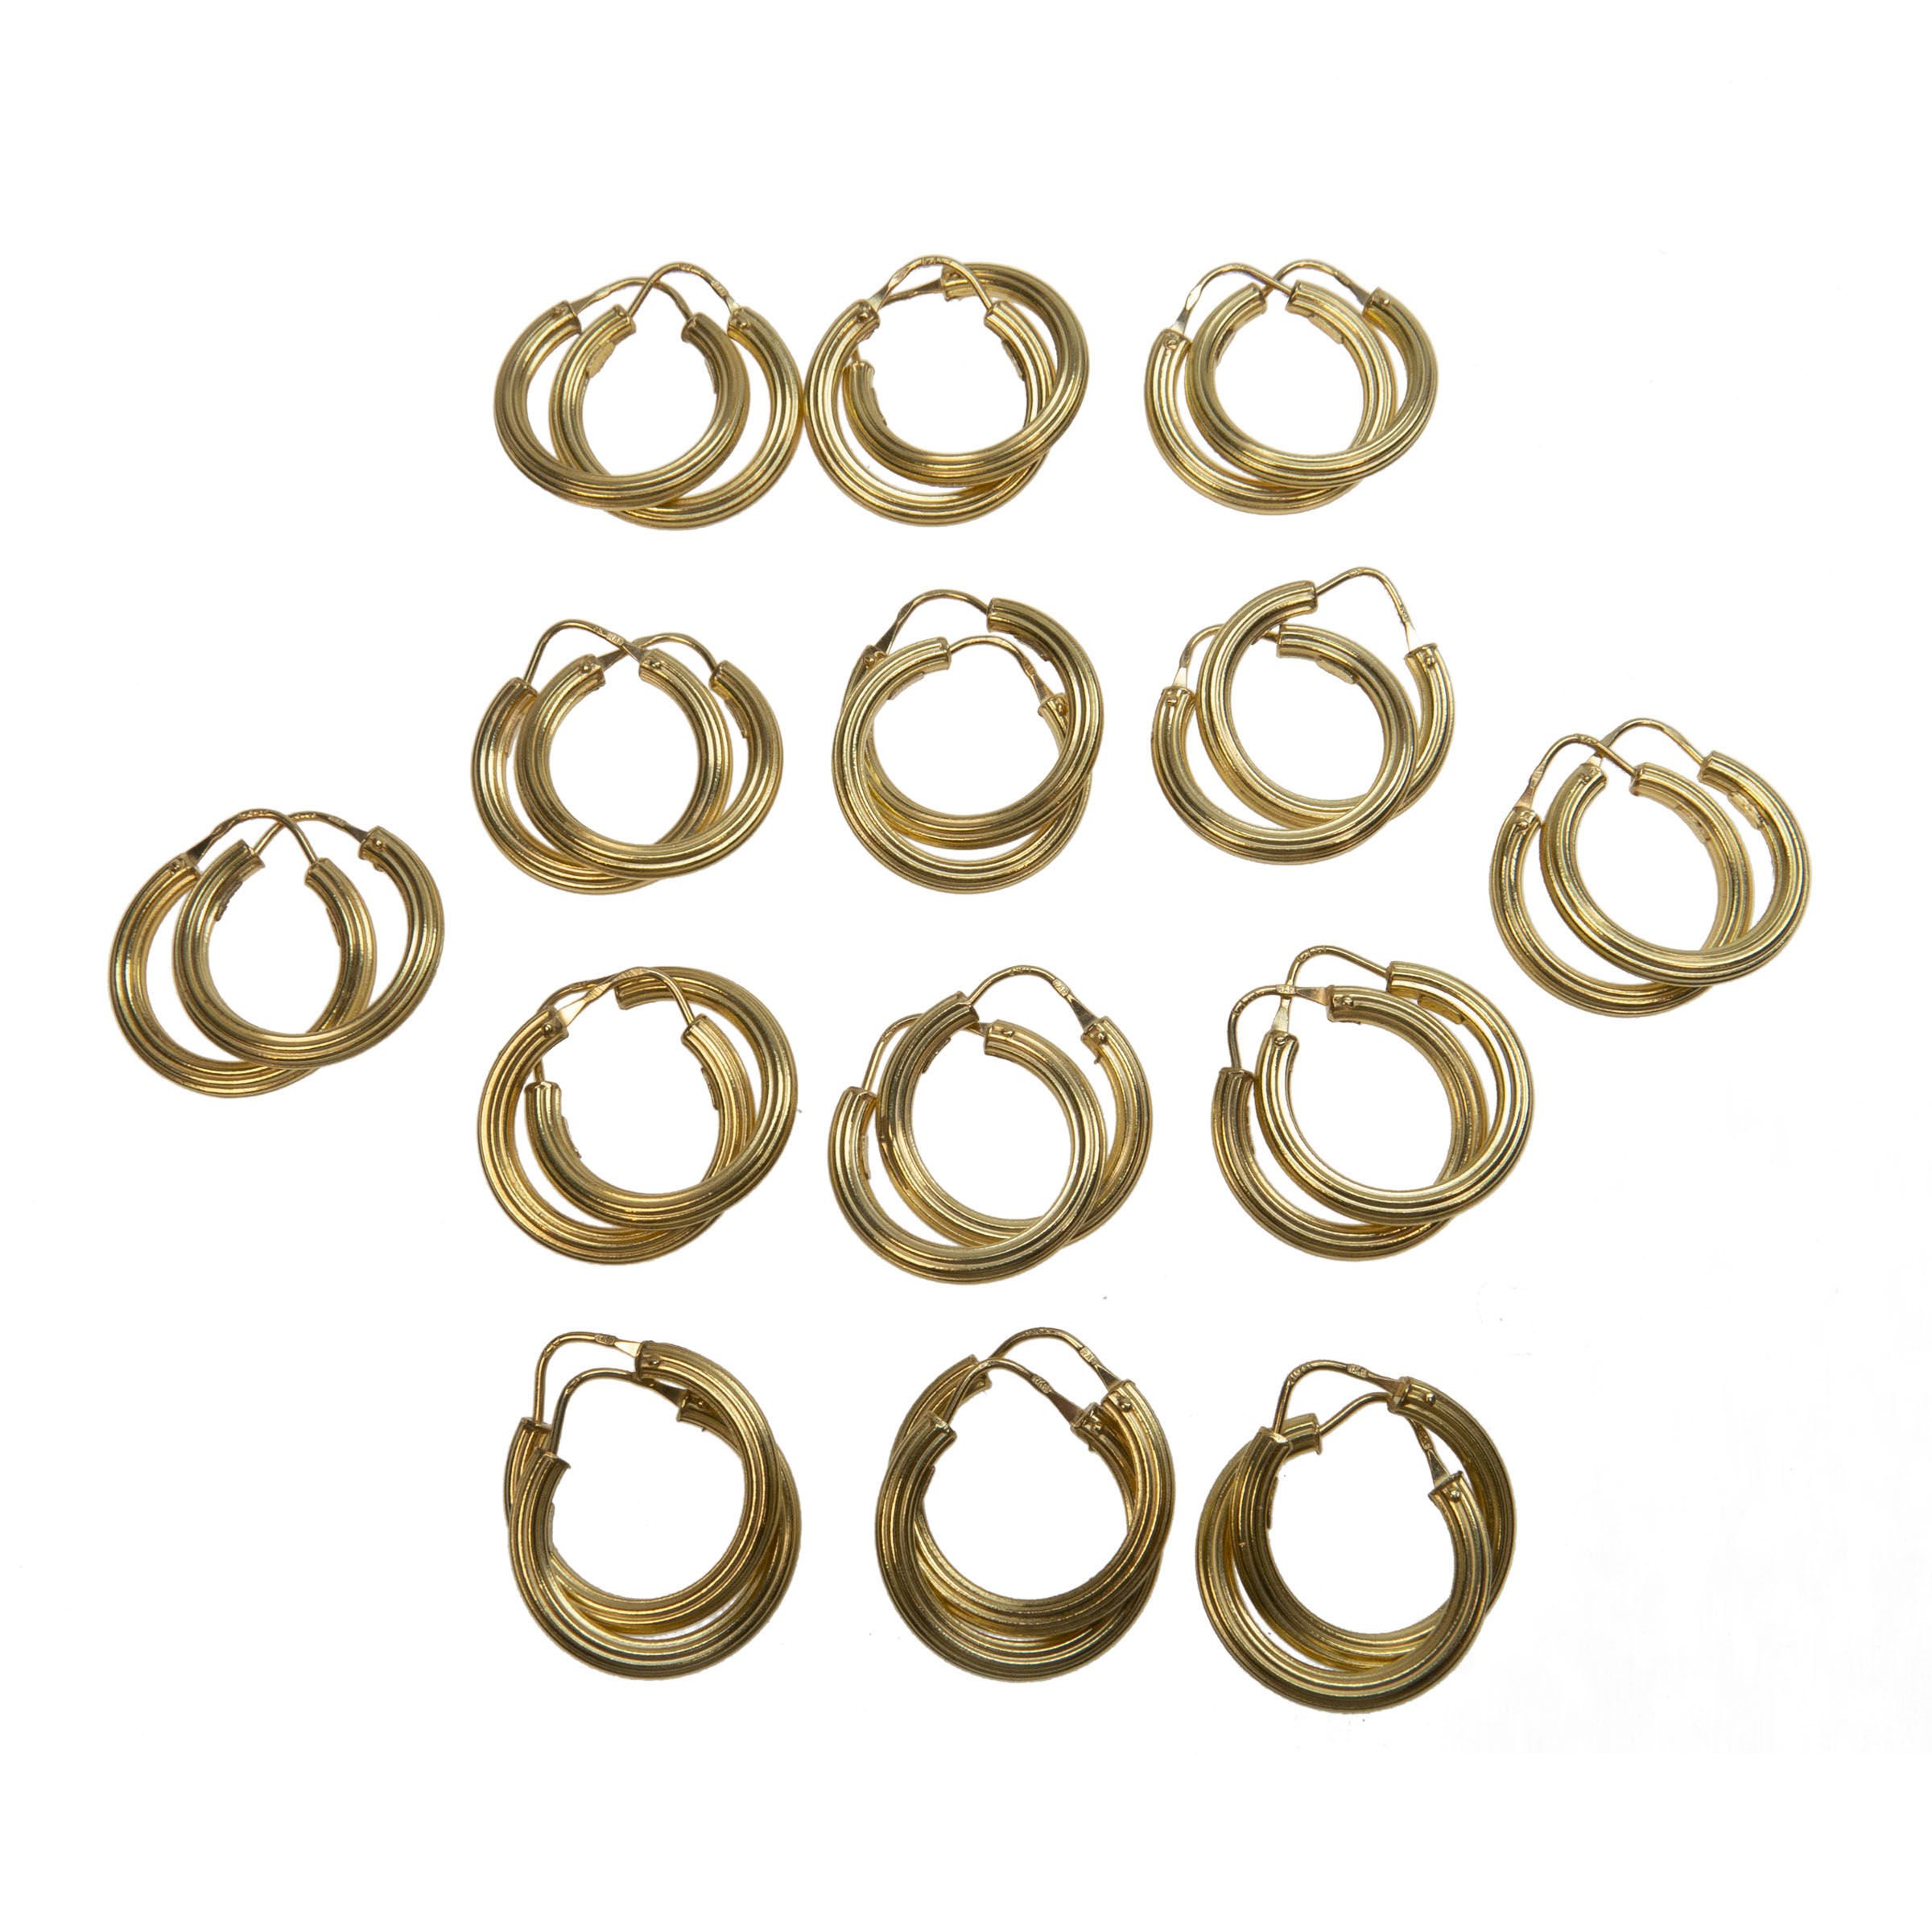 14 X Pairs Of 18K Yellow Gold Hoop Earrings